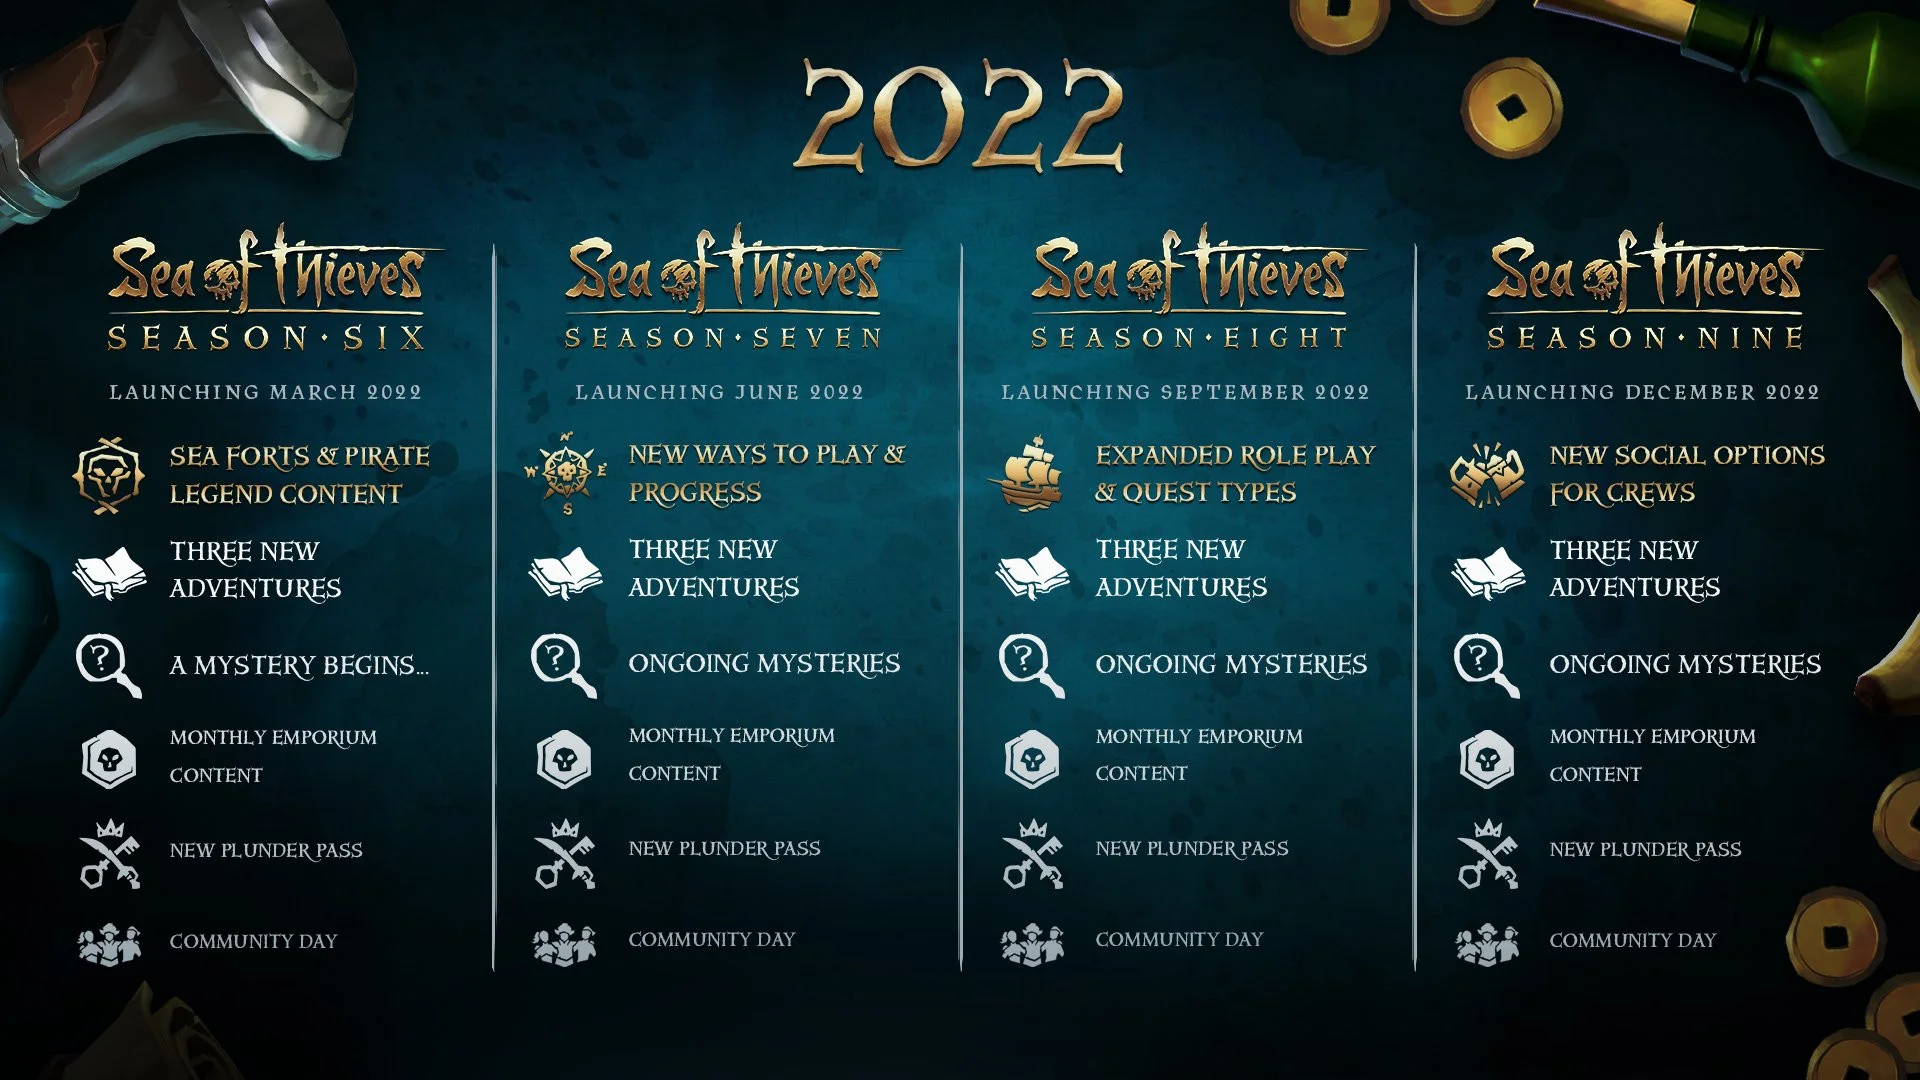 Сюжетные события и шестой сезон — авторы Sea of Thieves раскрыли планы на 2022 год - фото 1